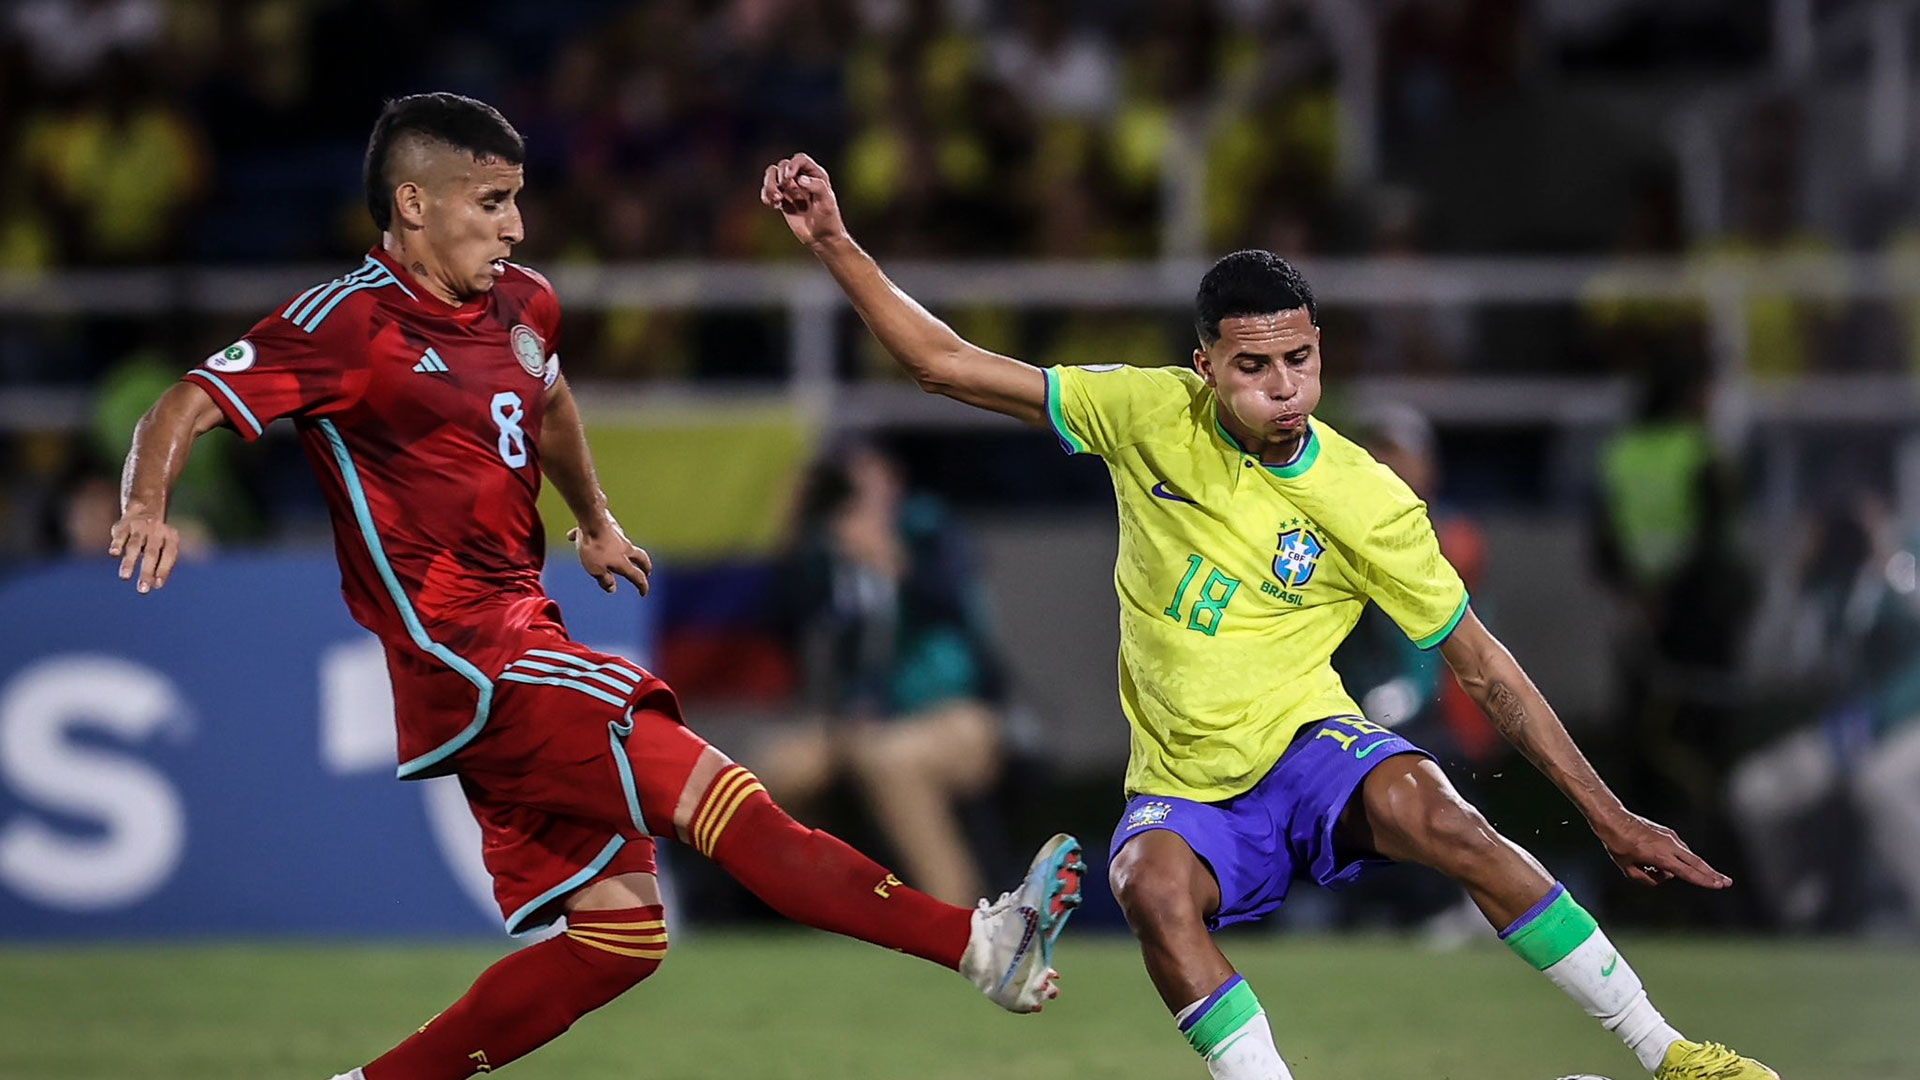 Un golazo, polémicas y pierna fuerte: así fue el electrizante empate entre Brasil y Colombia que benefició a la Argentina